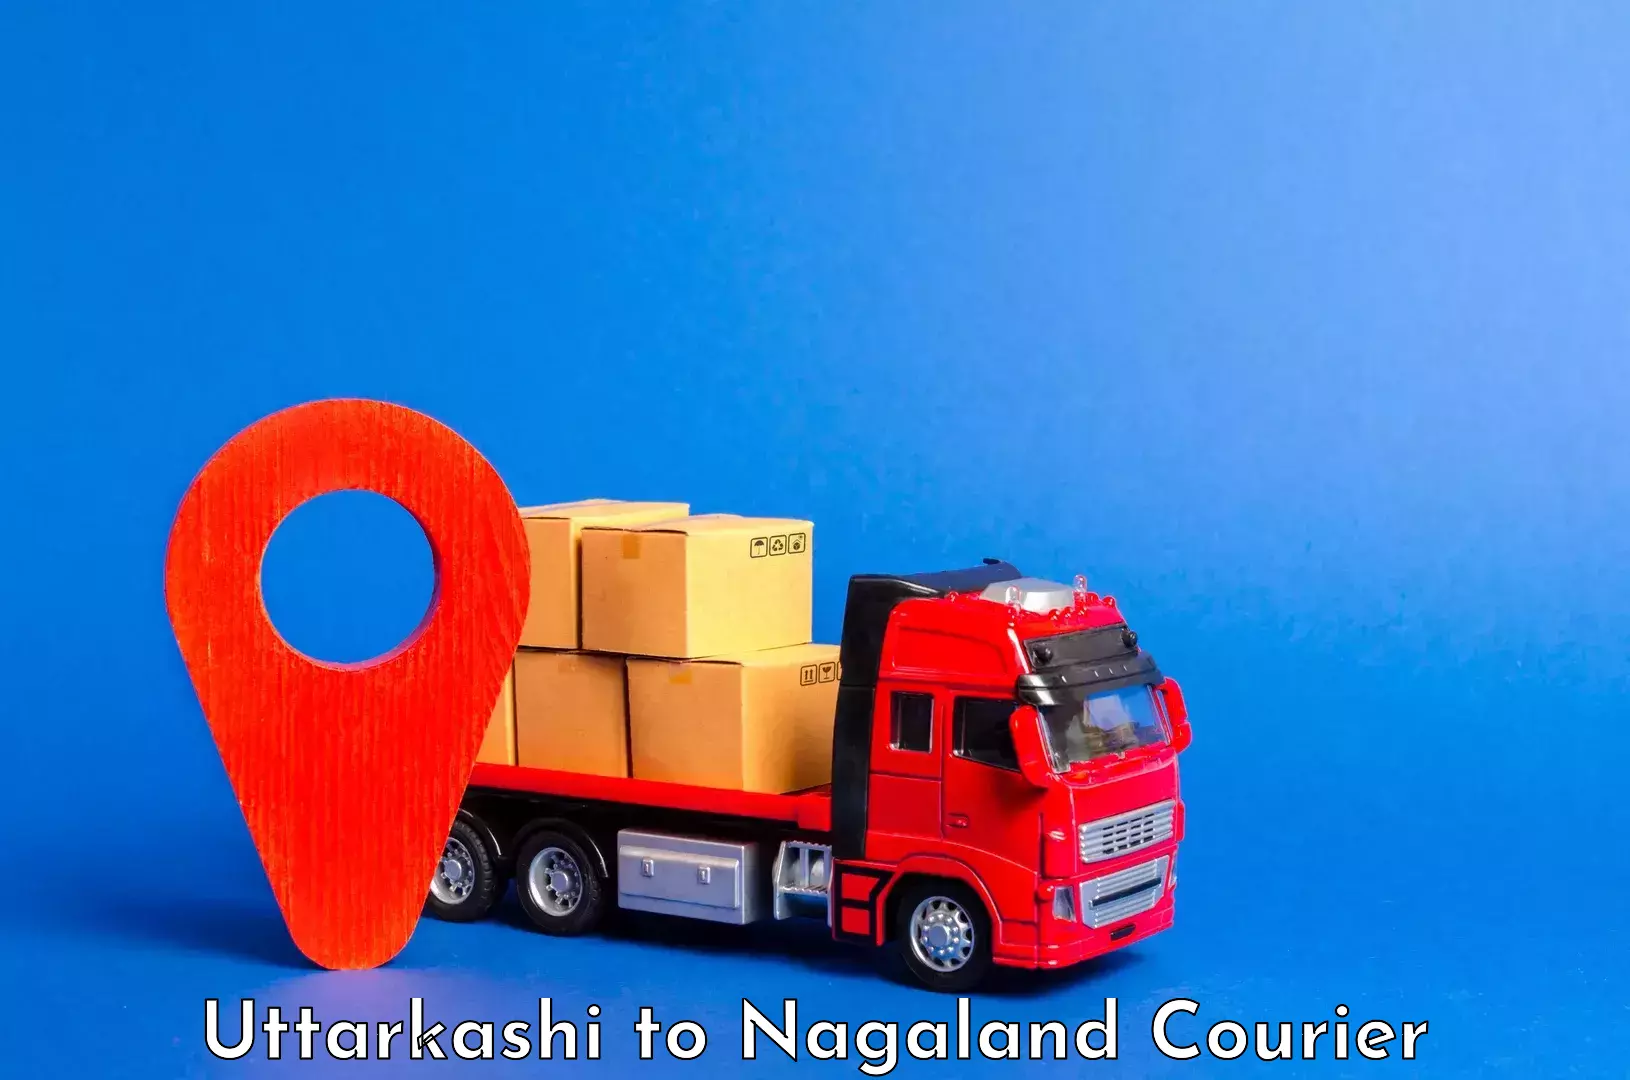 Luggage delivery logistics Uttarkashi to Longleng